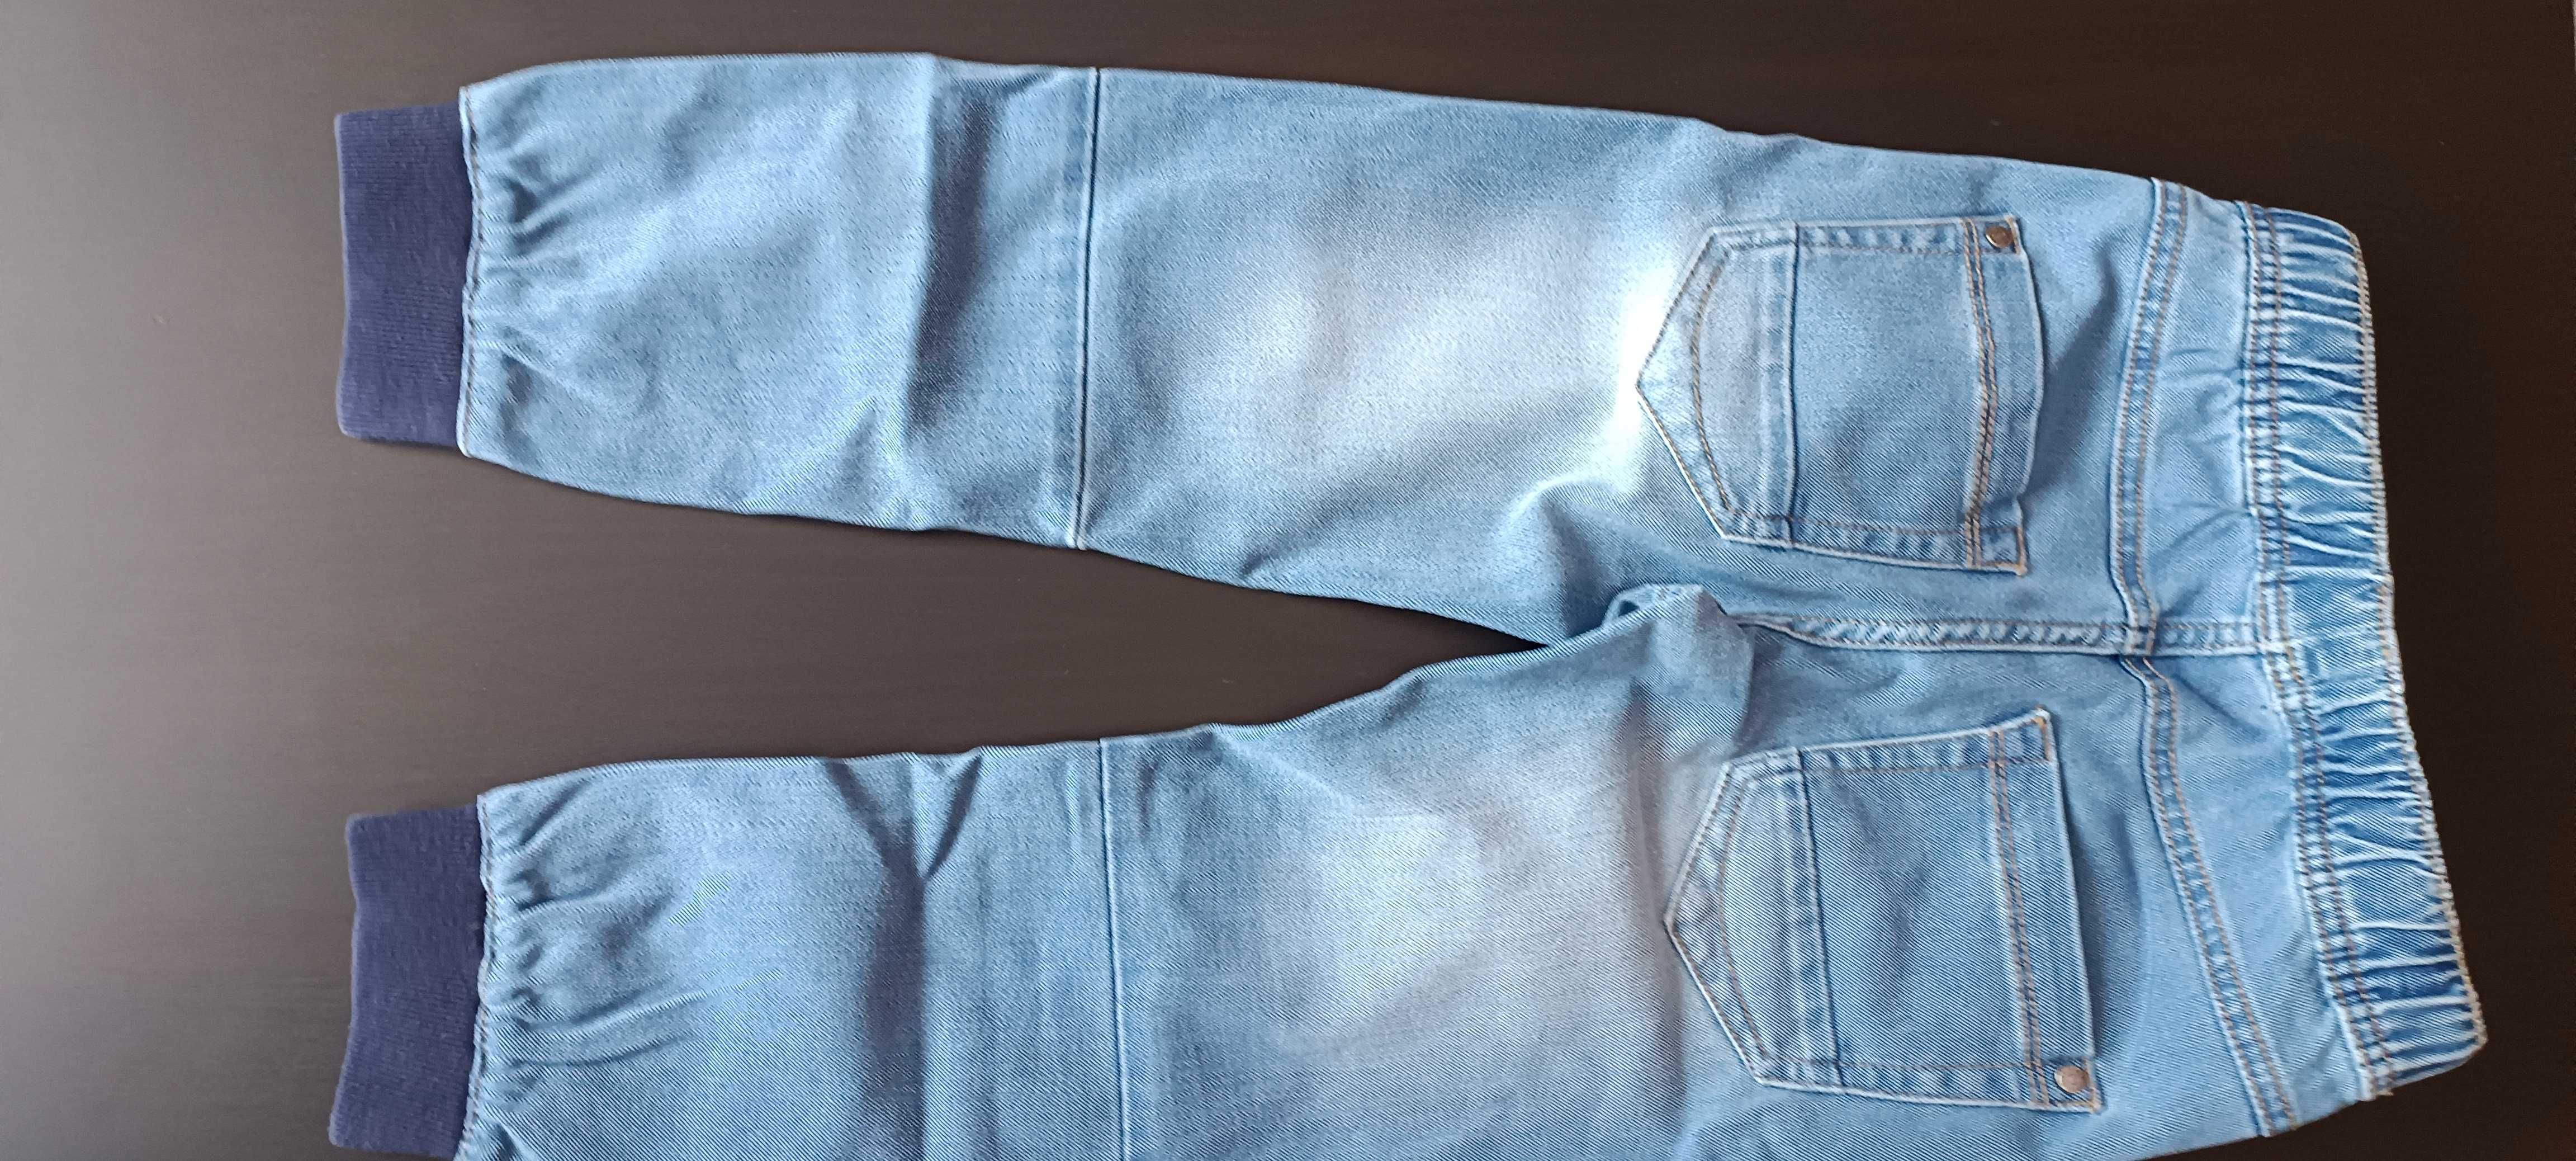 Spodnie jeansowe 116 chłopięce